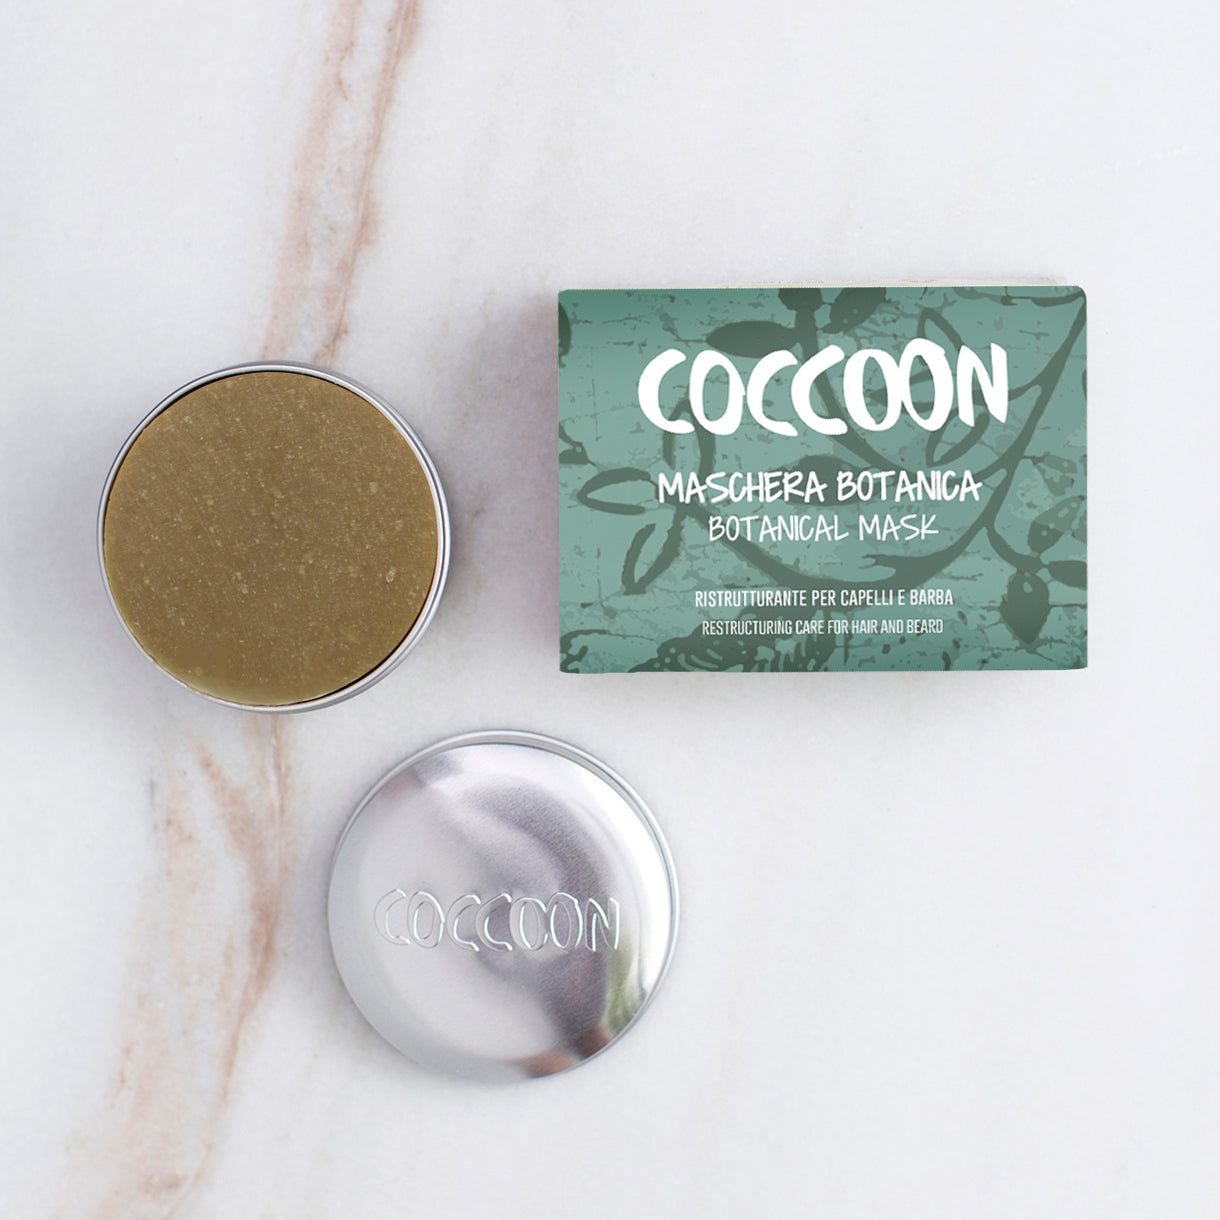 Confezione di maschera botanica Coccoon con panetto nudo inserito nel porta solidi Coccoon in alluminio